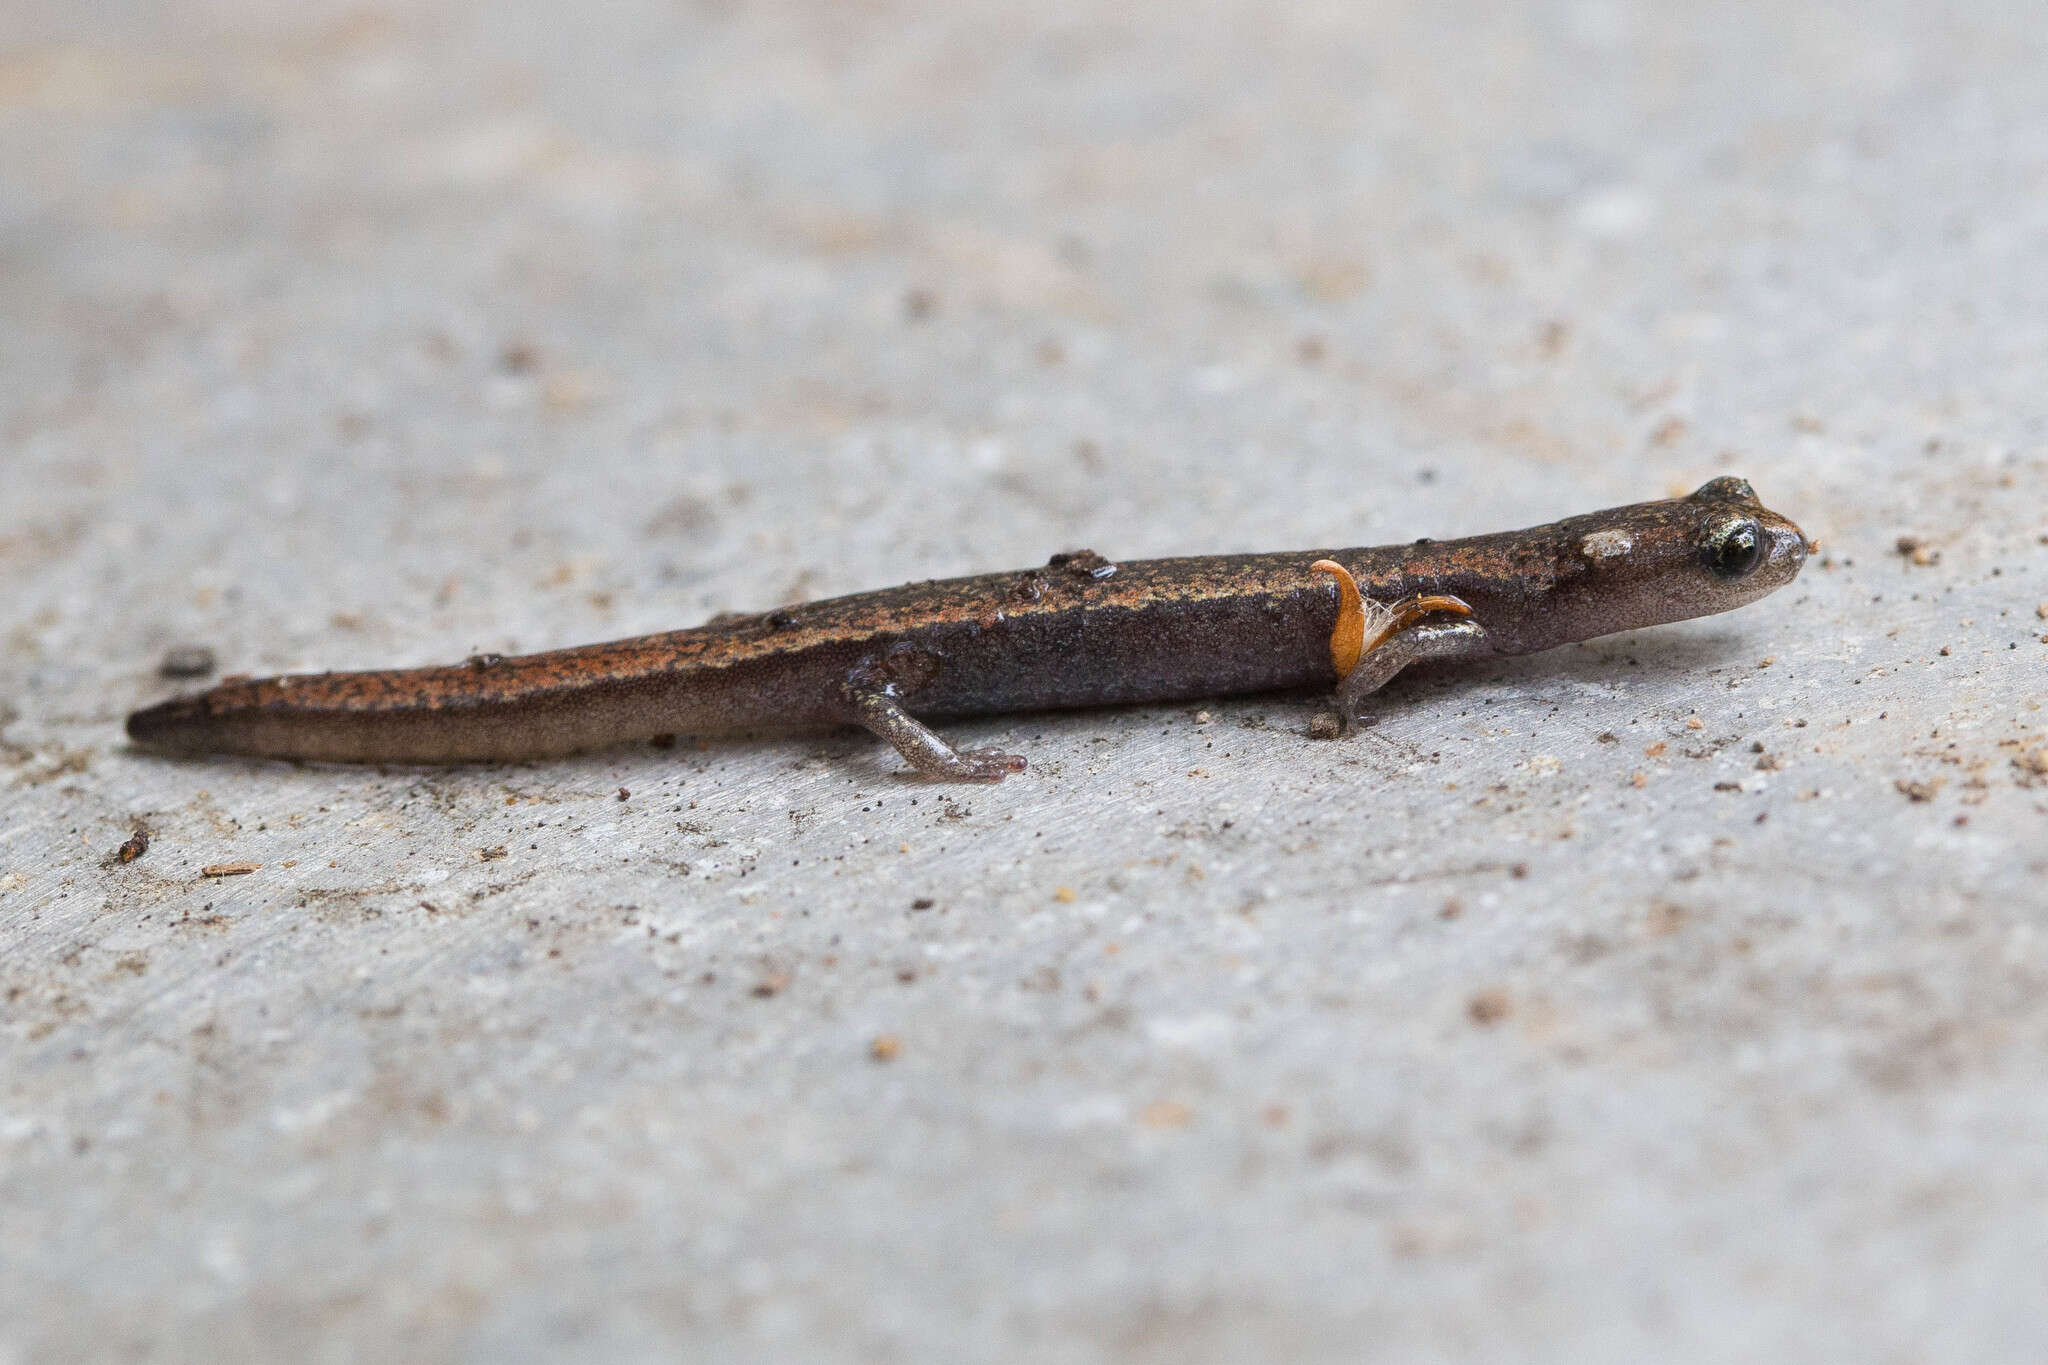 Image of Channel Islands Slender Salamander